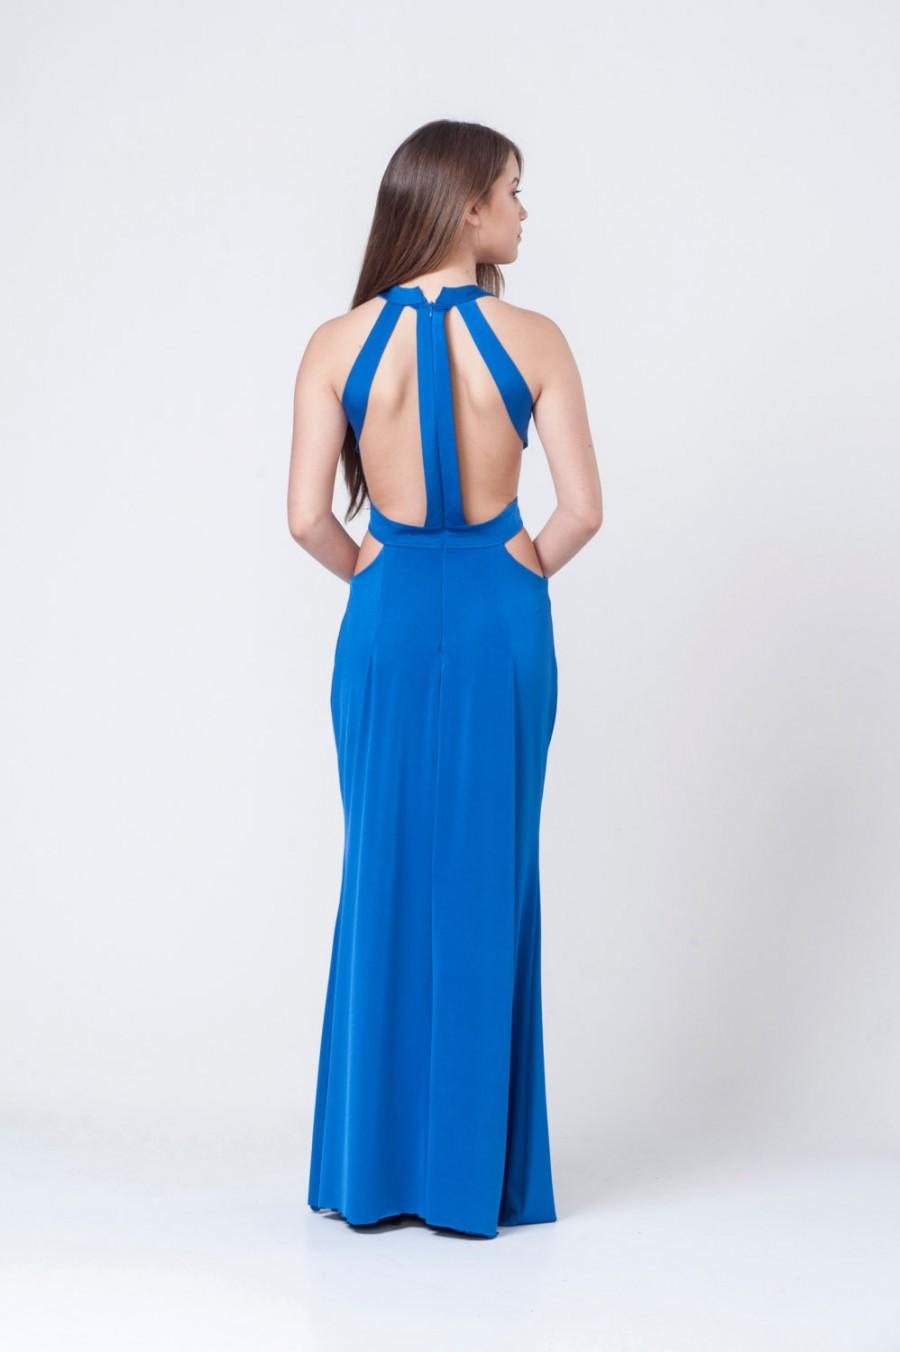 Hochzeit - Royal Blue Evening Dress, Prom Dress, Bridesmaid Dress, Elegant Dress, Long Maxi Prom Dress, Open Back Dress, Floor Length Dress, Blue Dress